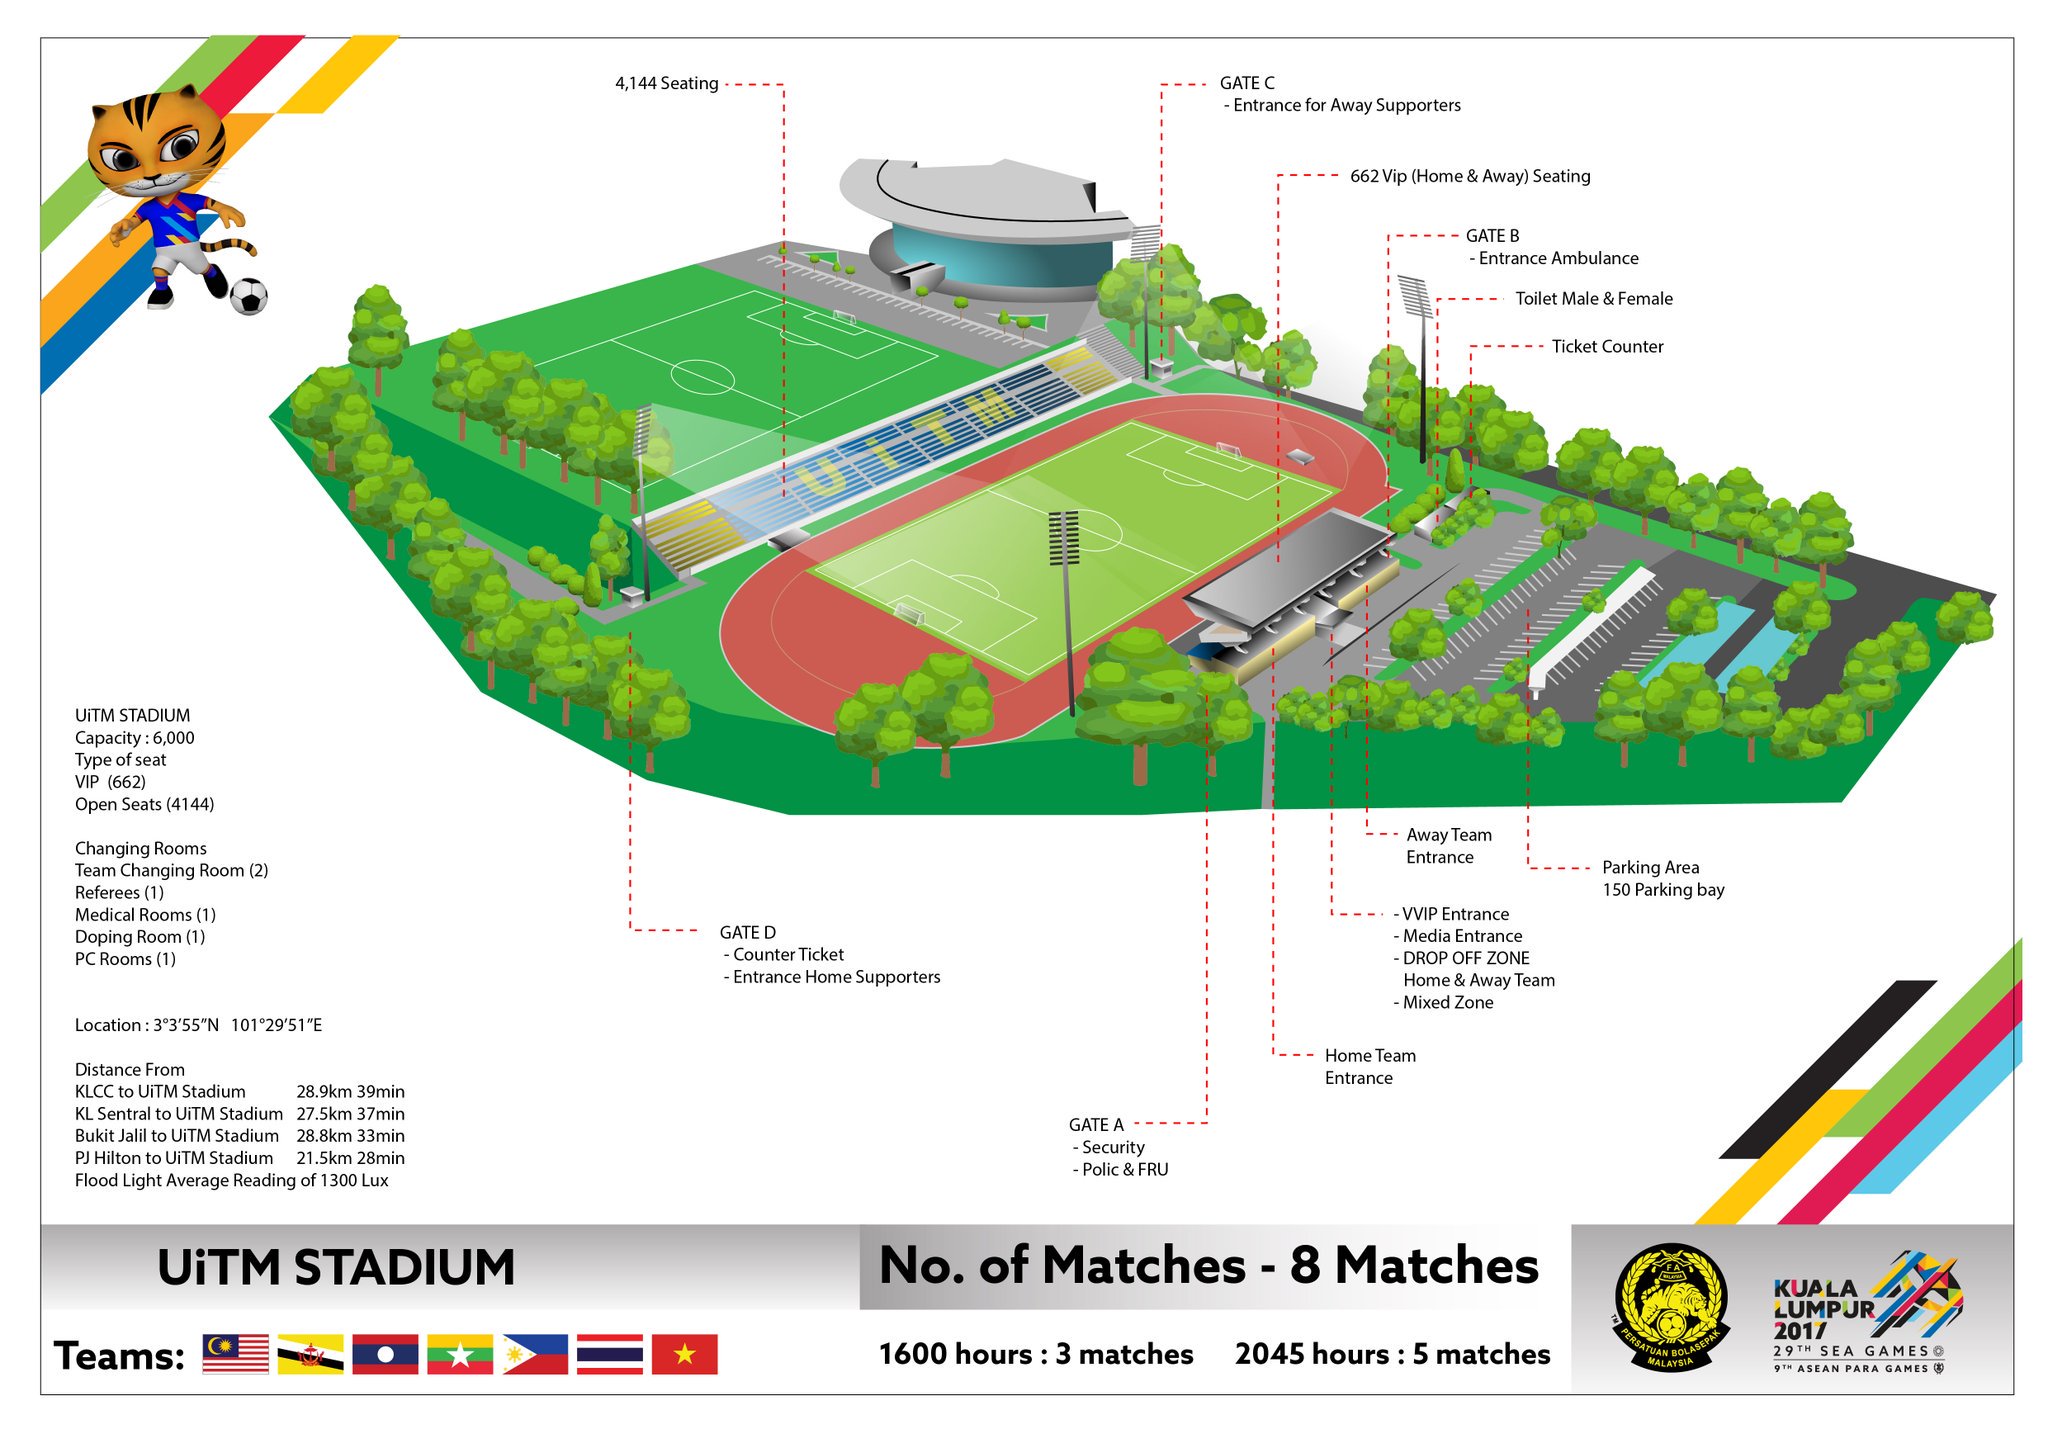 ট ইট র Fa Malaysia Stadium Info 3 2017 Sea Games Uitm Stadium Shah Alam Full Schedule For The Men S Amp Women S Football At Https T Co 98wwlgjgc9 Https T Co C2hcbt5mcf ট ইট র